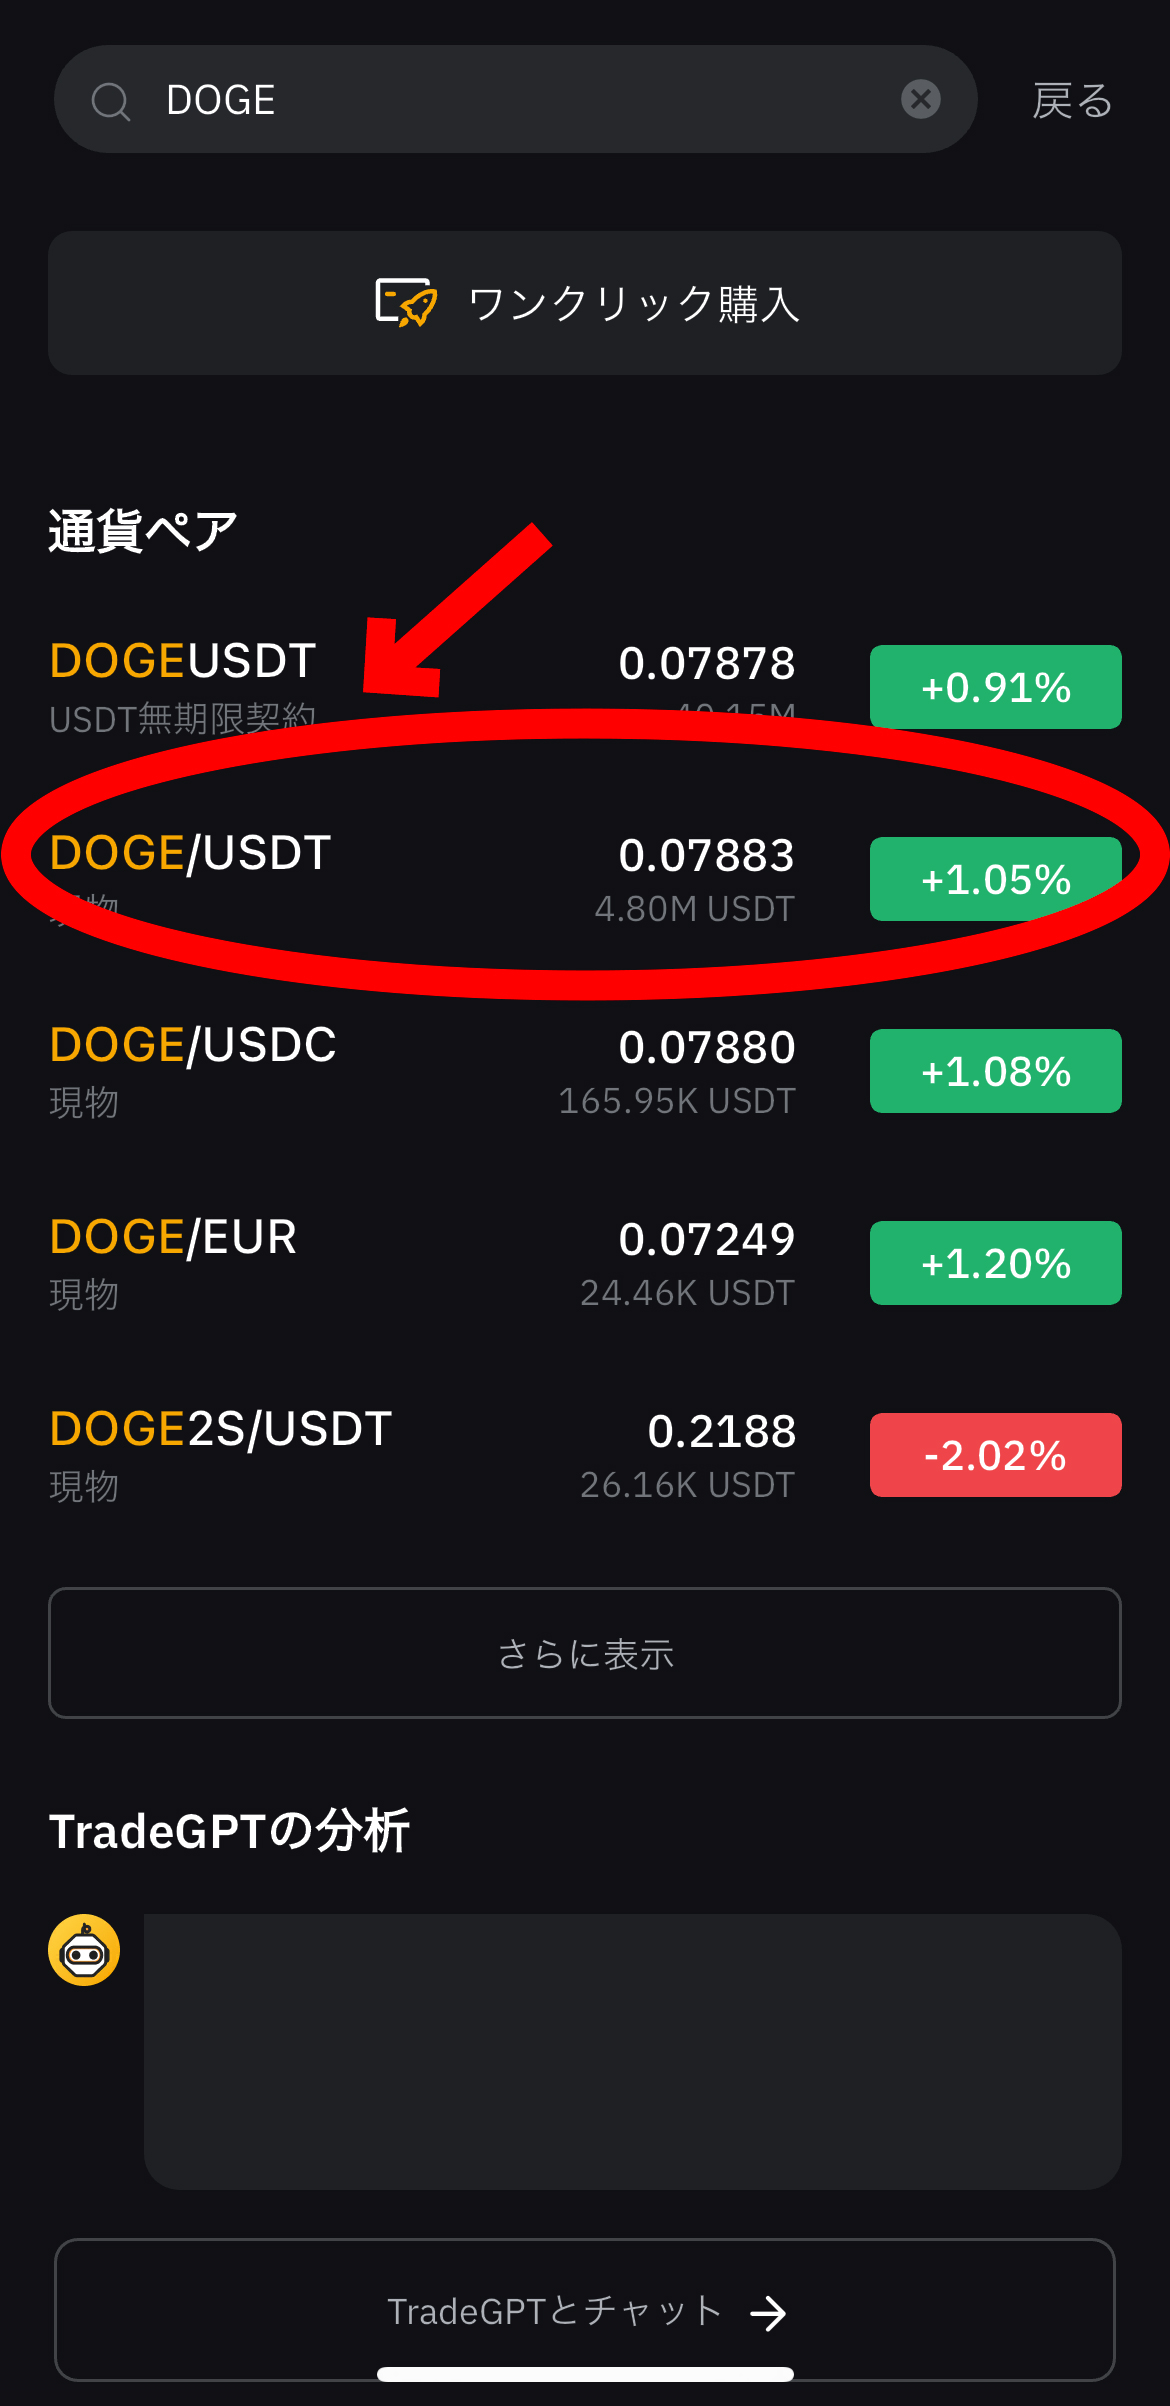 (最新版)DOGEコインの買い方、レバレッジ方法【ドージコイン】【Bybit】【バイビット】【取引所】【先物】【暗号資産】【仮想通貨】DOGE/USDT（現物）を選択します